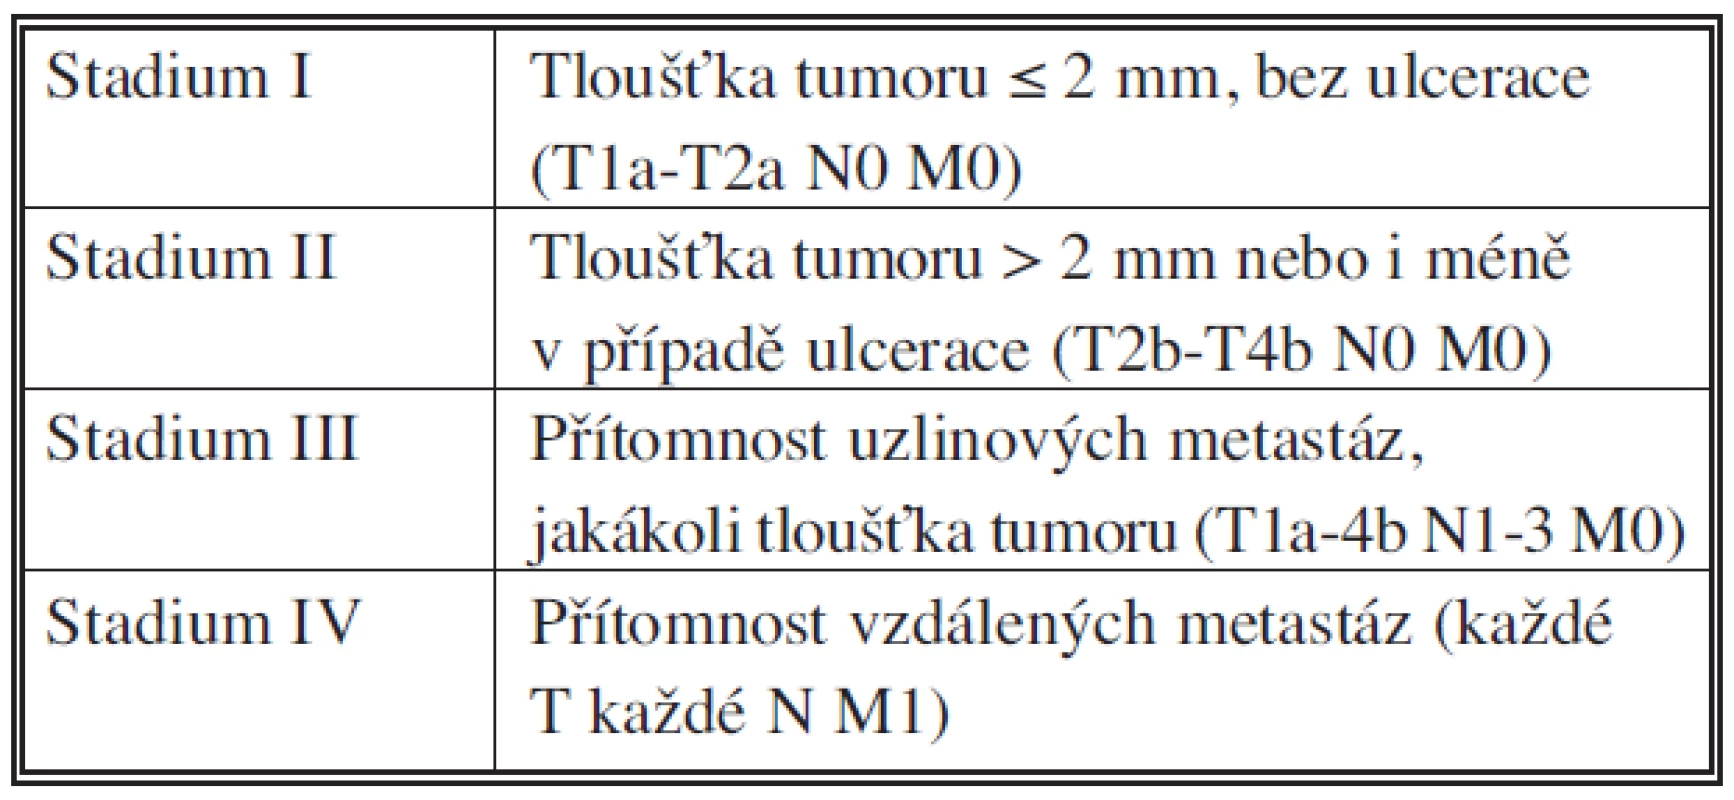 Stadia maligního melanomu podle AJCC (zjednodušeno)
Tab. 1. Stage of malignant melanoma according AJCC